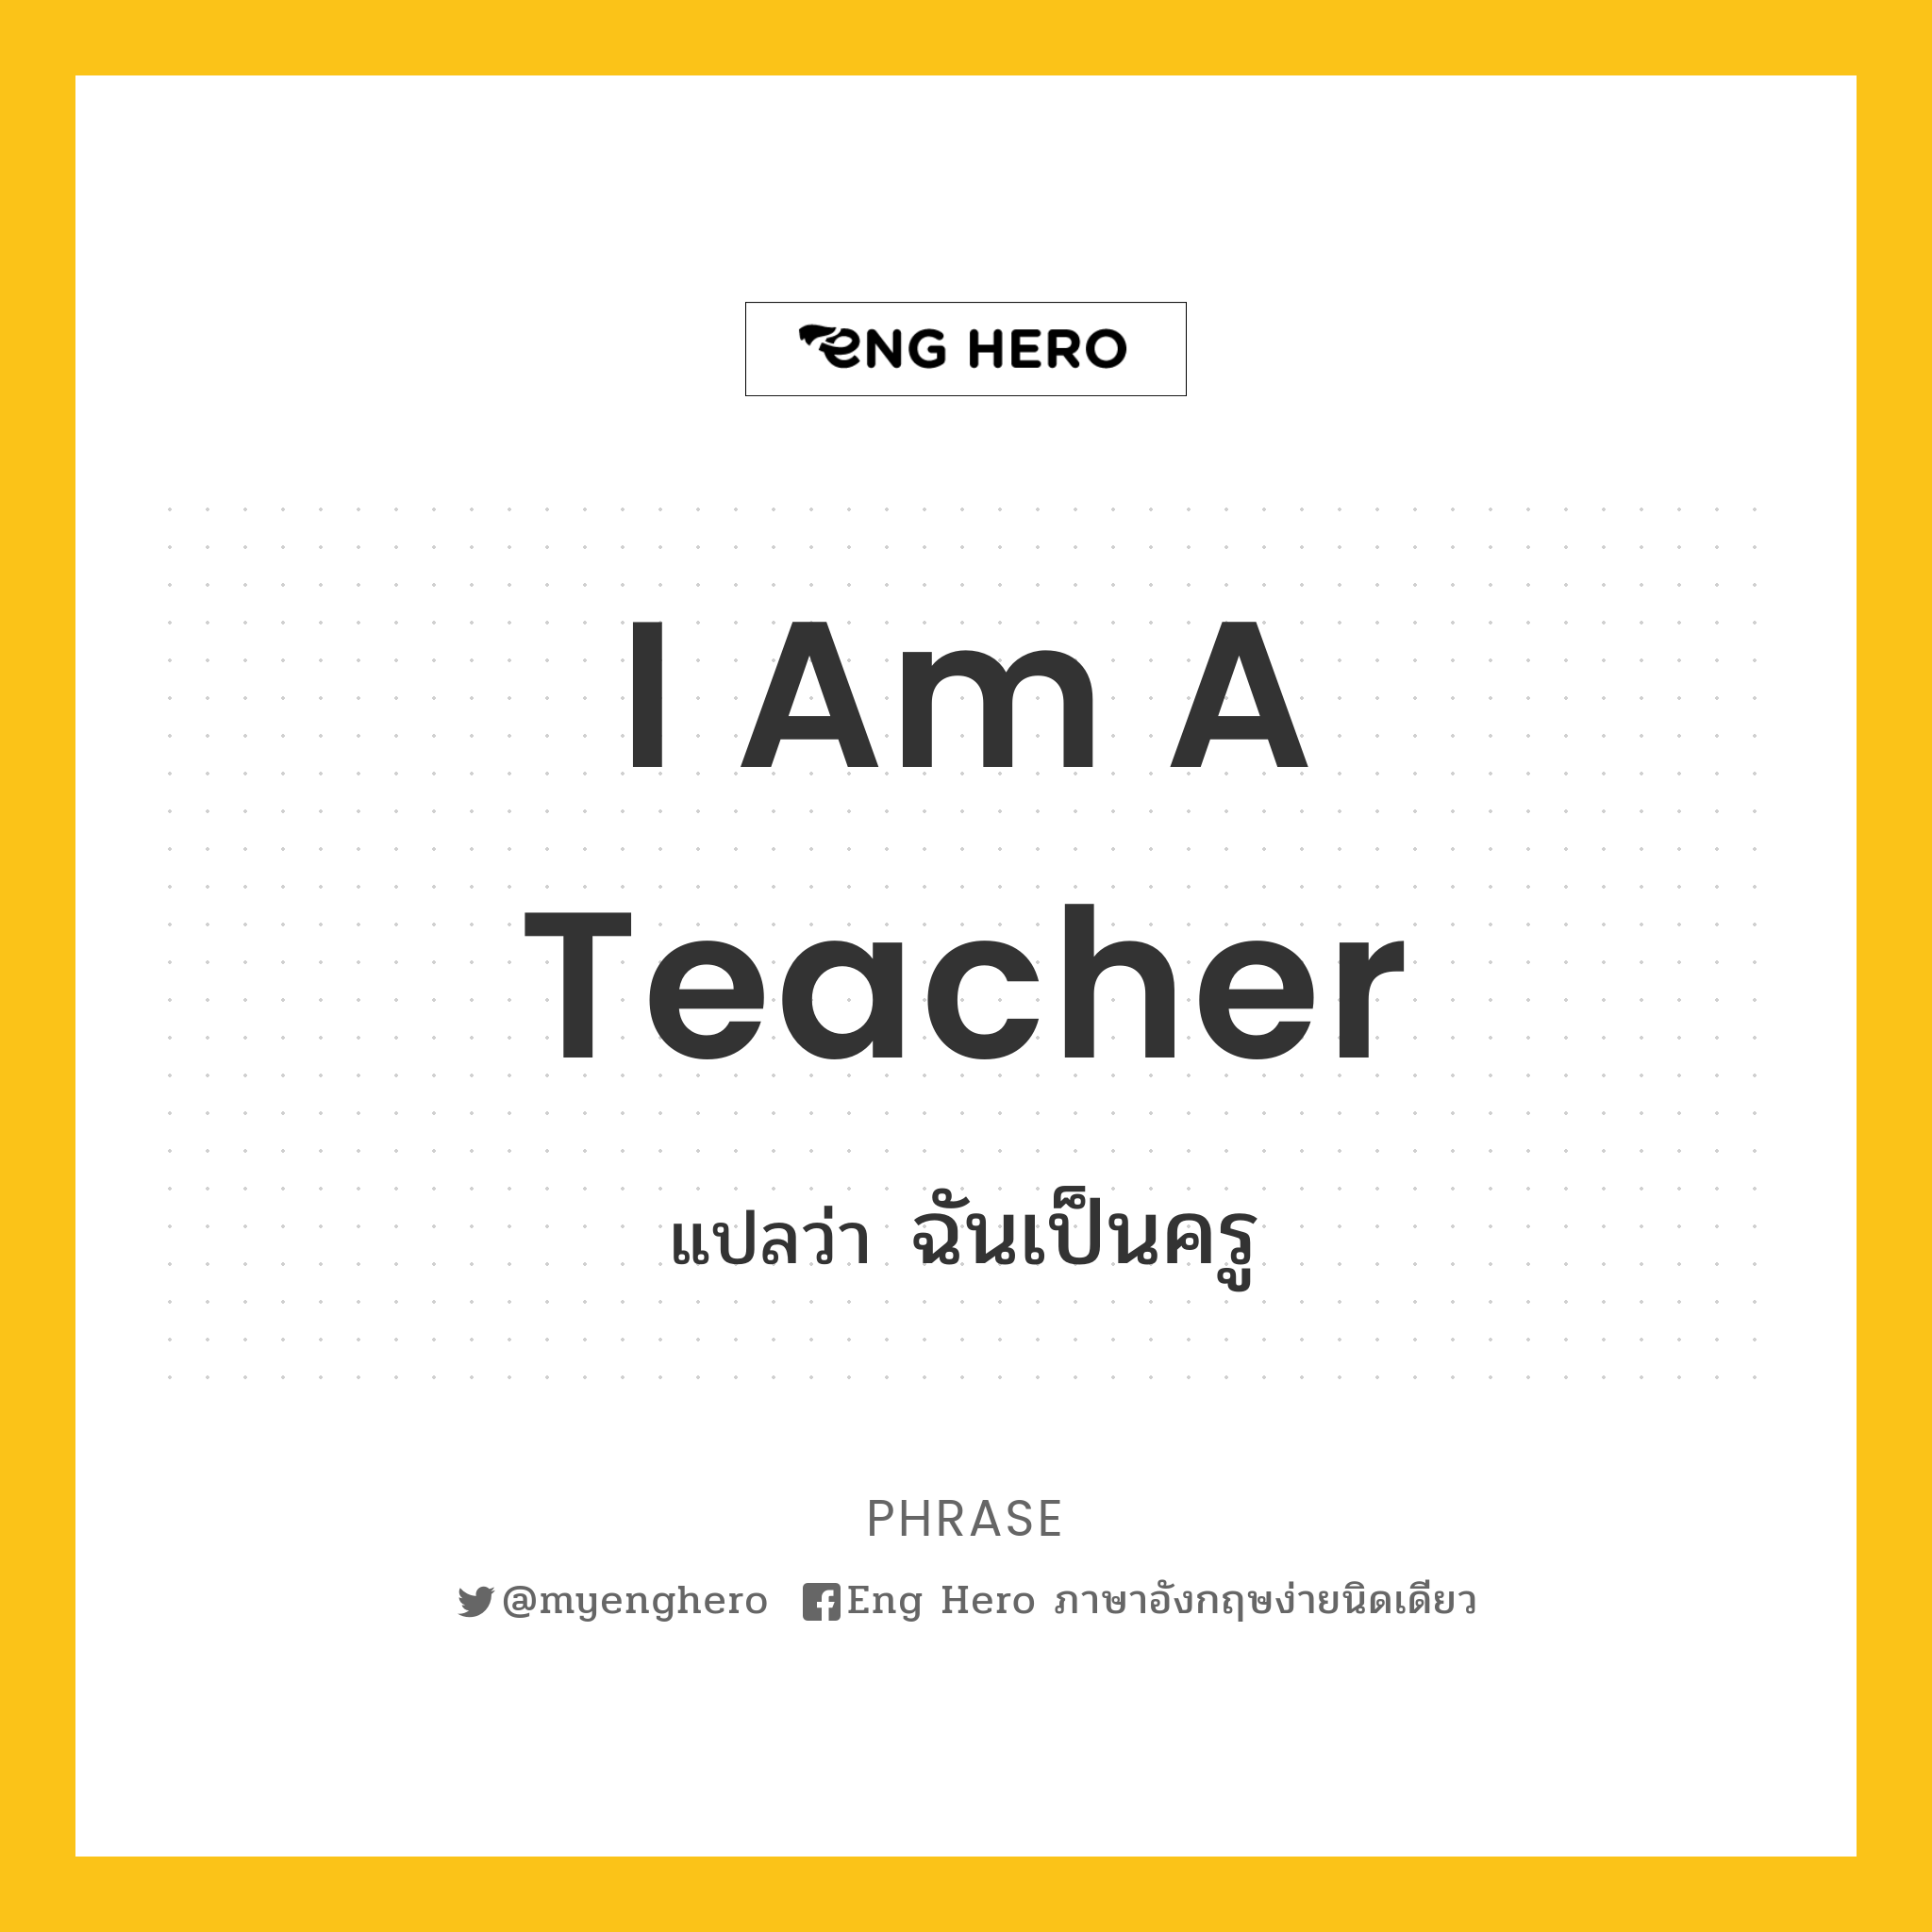 I am a teacher